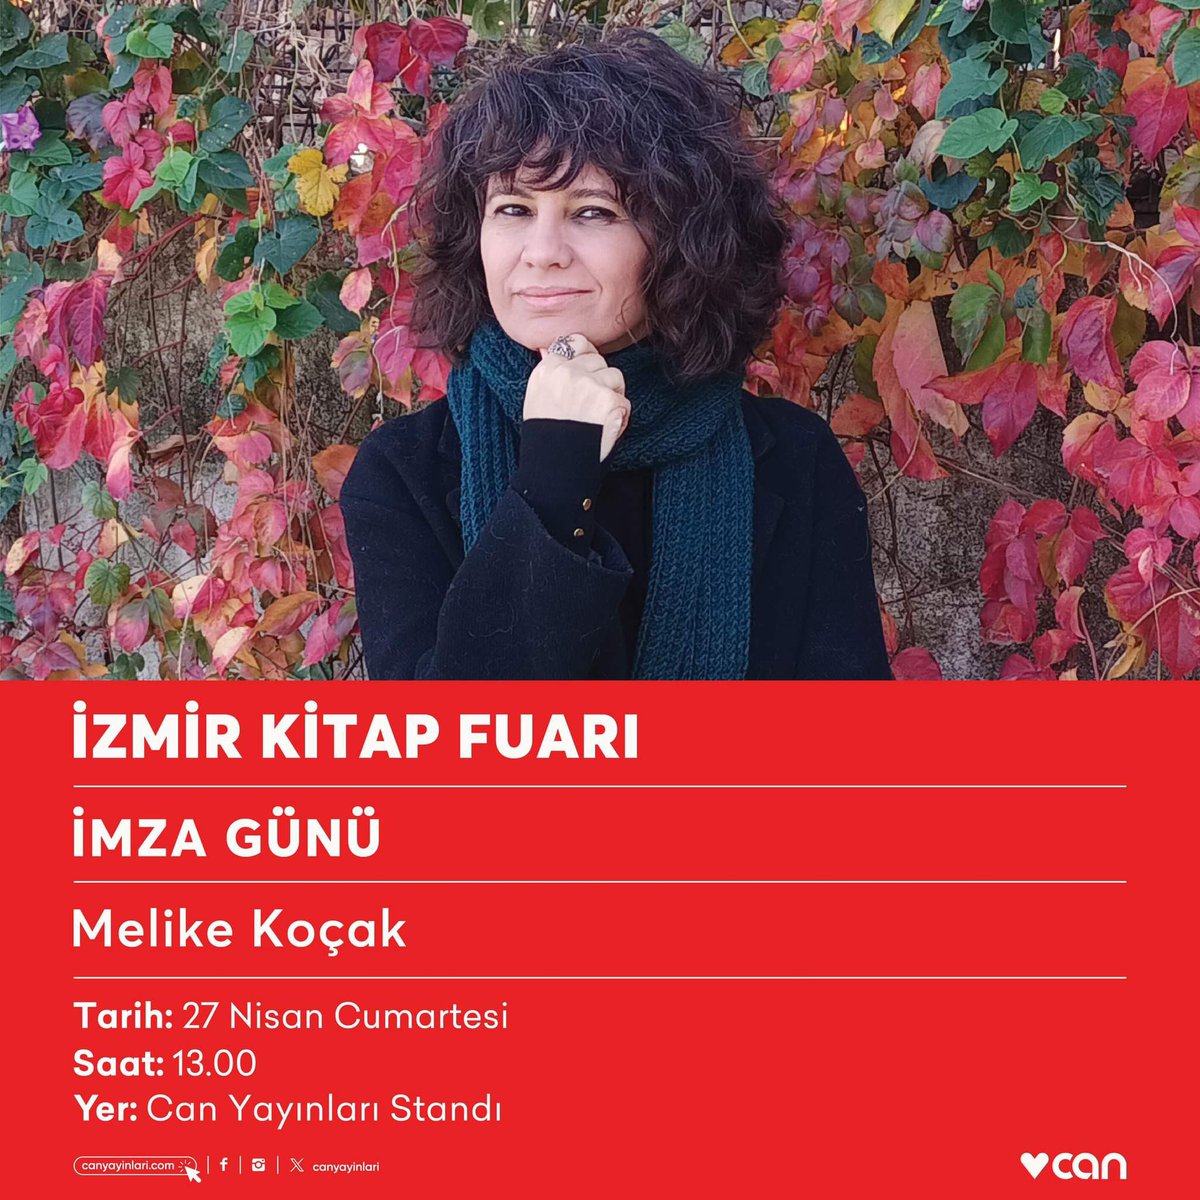 Melike Koçak 27 Nisan Cumartesi günü saat 13.00’te #İzmirKitapFuarı Can Yayınları standında okurlarıyla buluşacak.